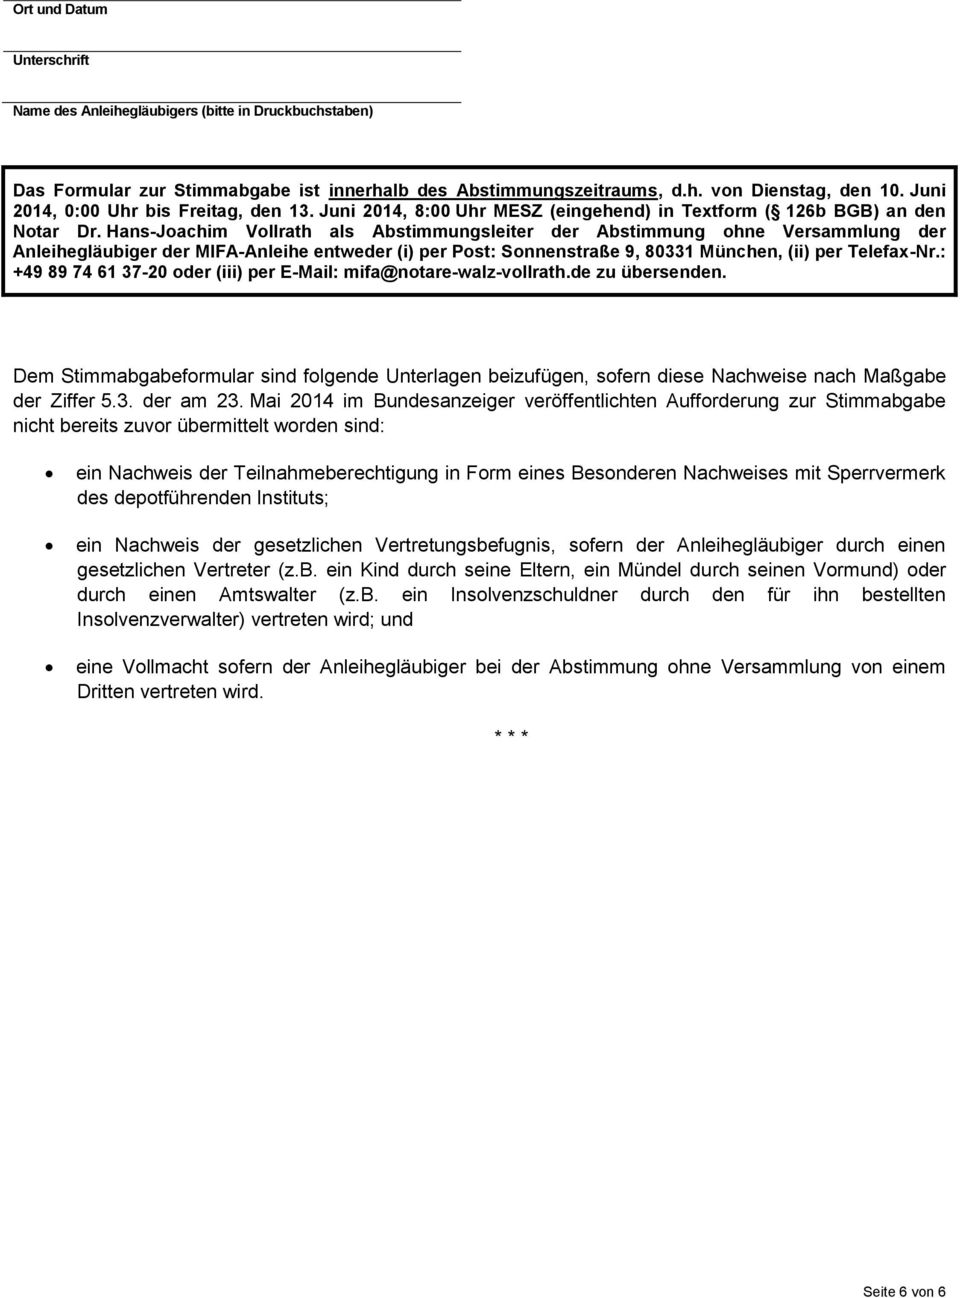 Hans-Joachim Vollrath als Abstimmungsleiter der Abstimmung ohne Versammlung der Anleihegläubiger der MIFA-Anleihe entweder (i) per Post: Sonnenstraße 9, 80331 München, (ii) per Telefax-Nr.